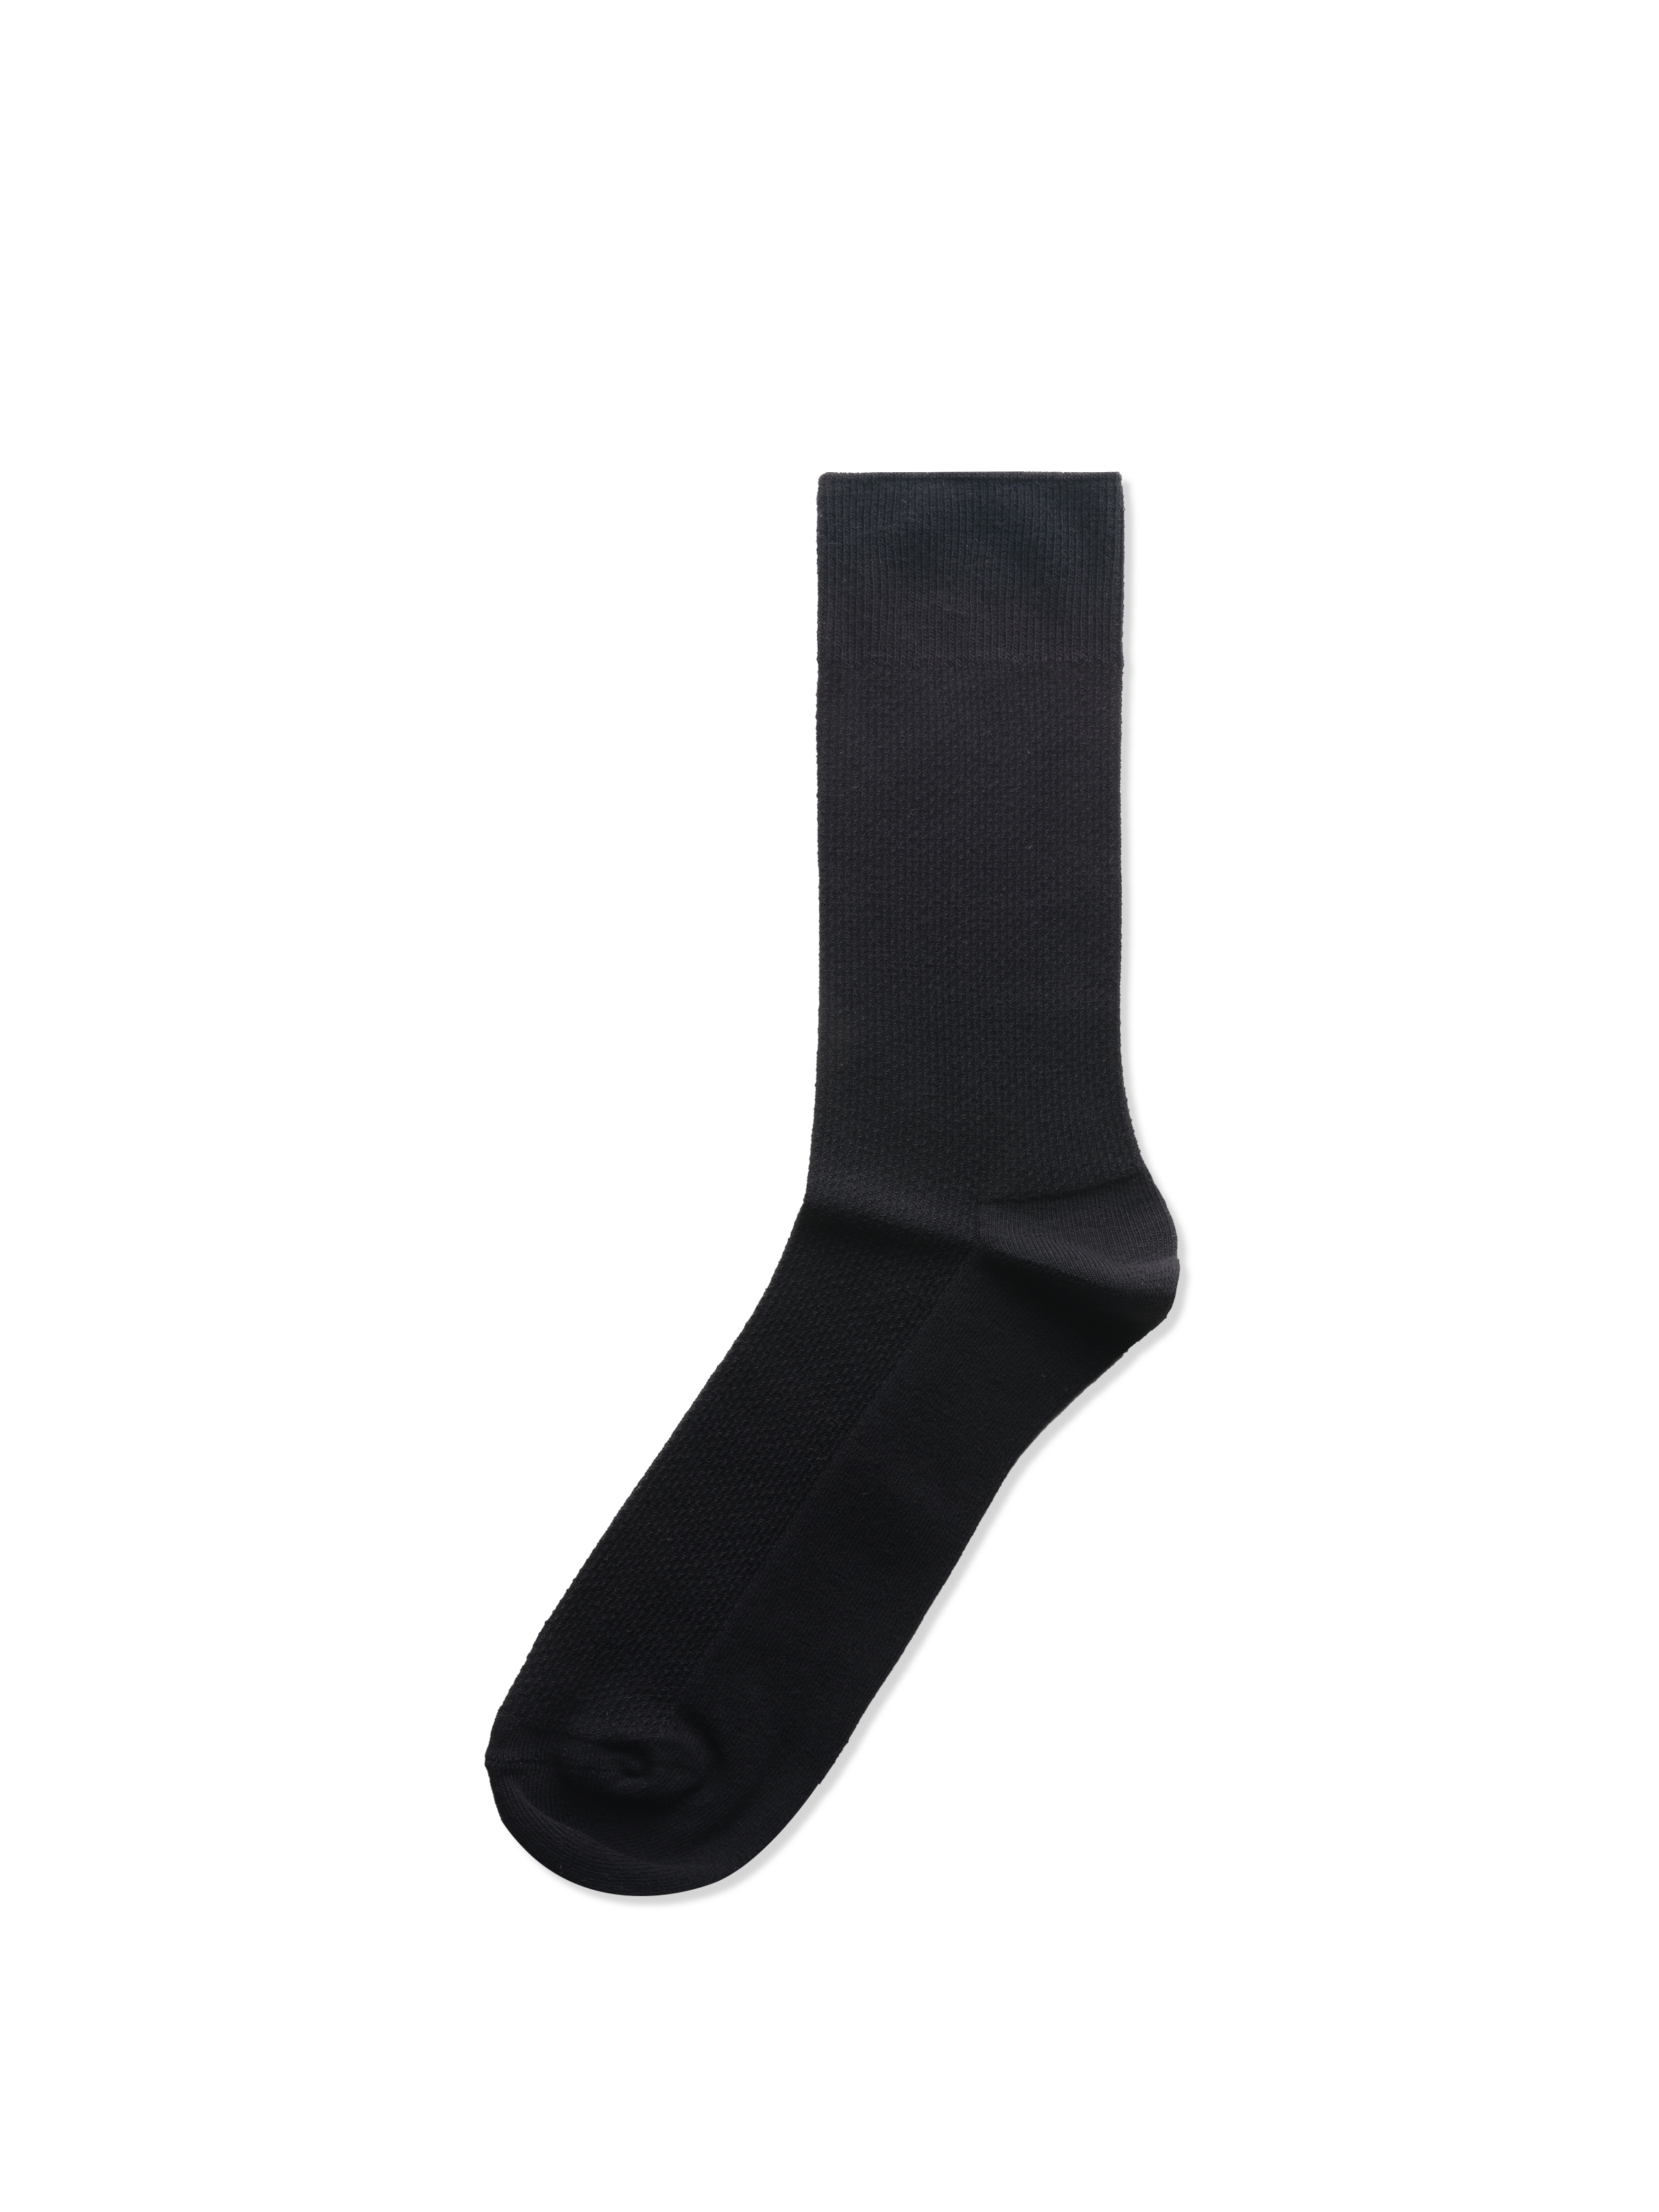 Uzun Siyah Erkek Çorap